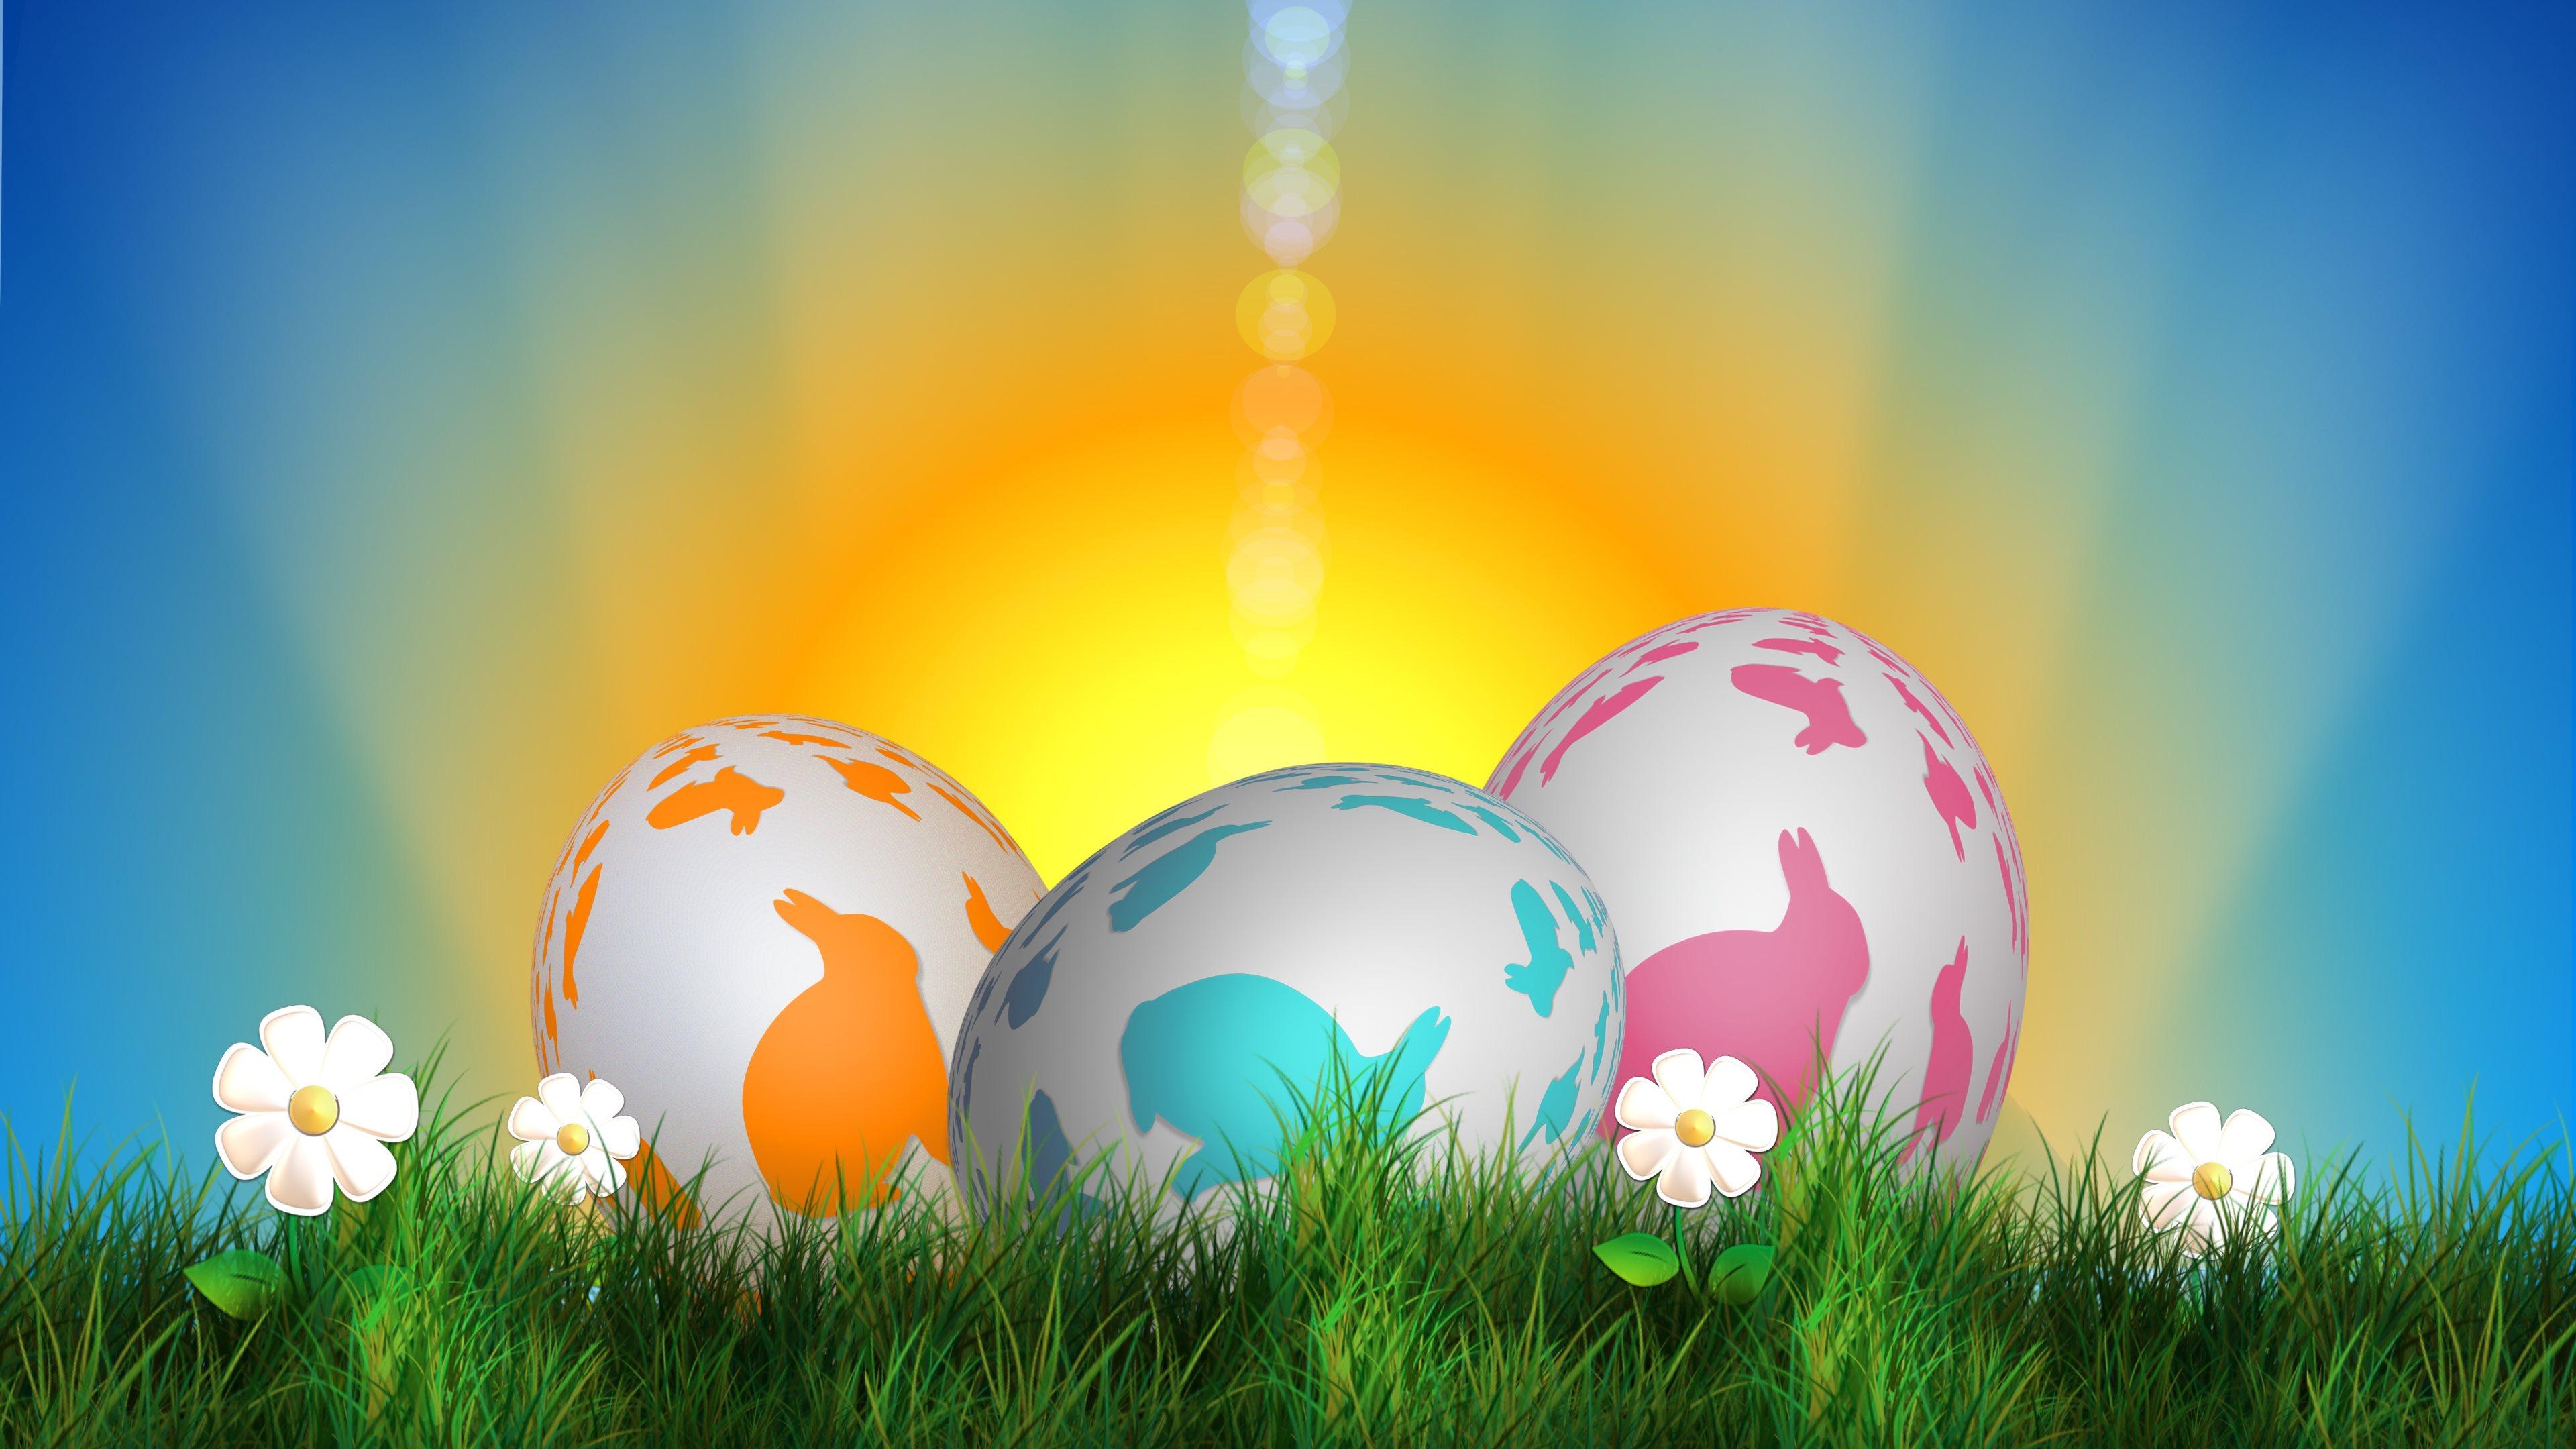 Happy Easter Image for Desktop